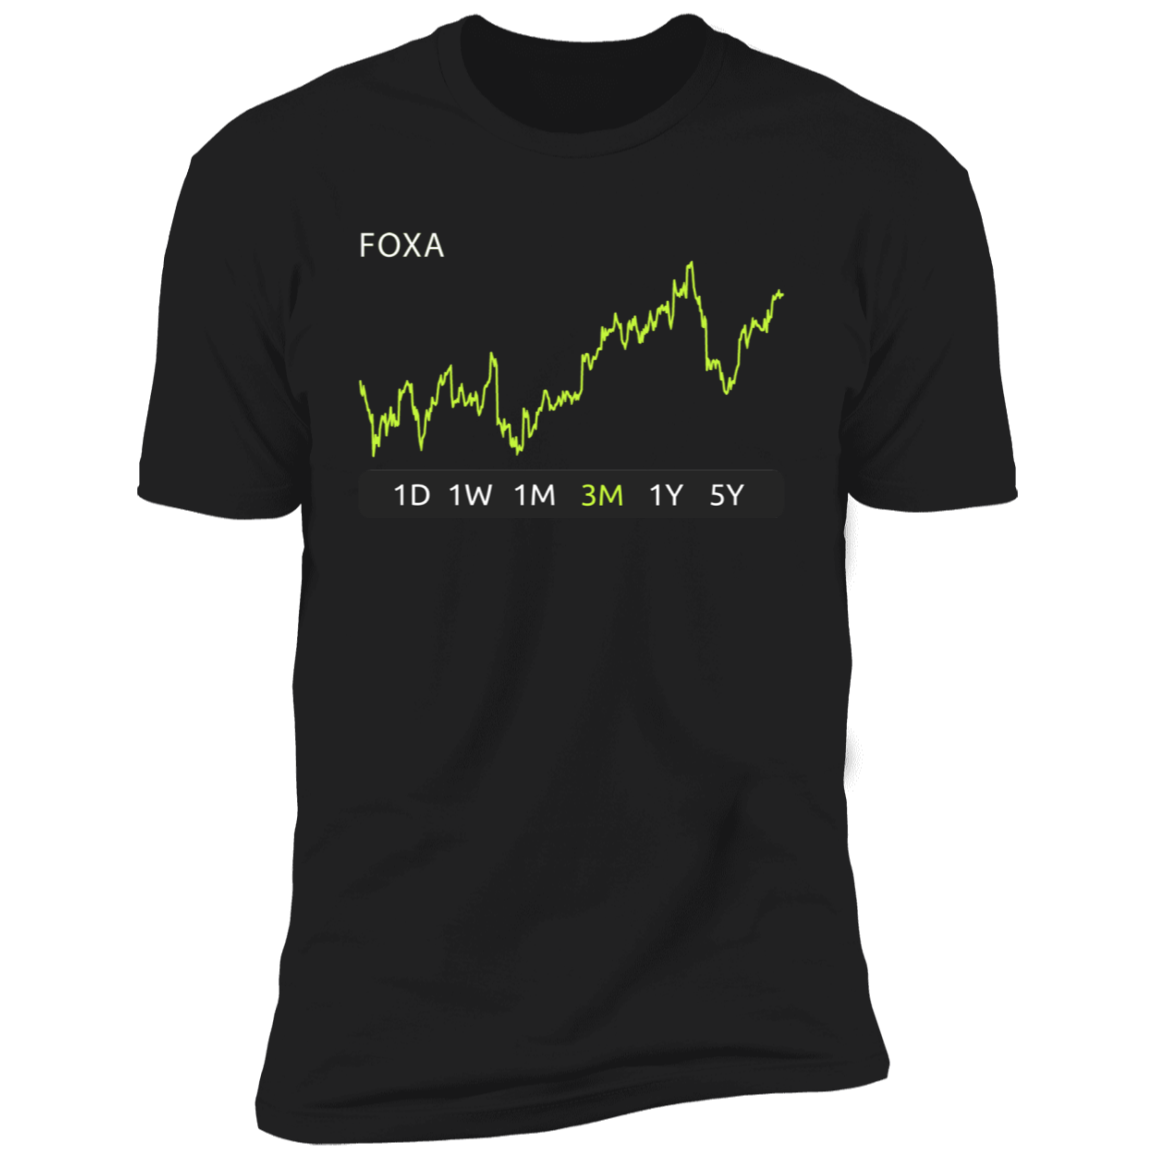 FOXA Stock 3m Premium T-Shirt